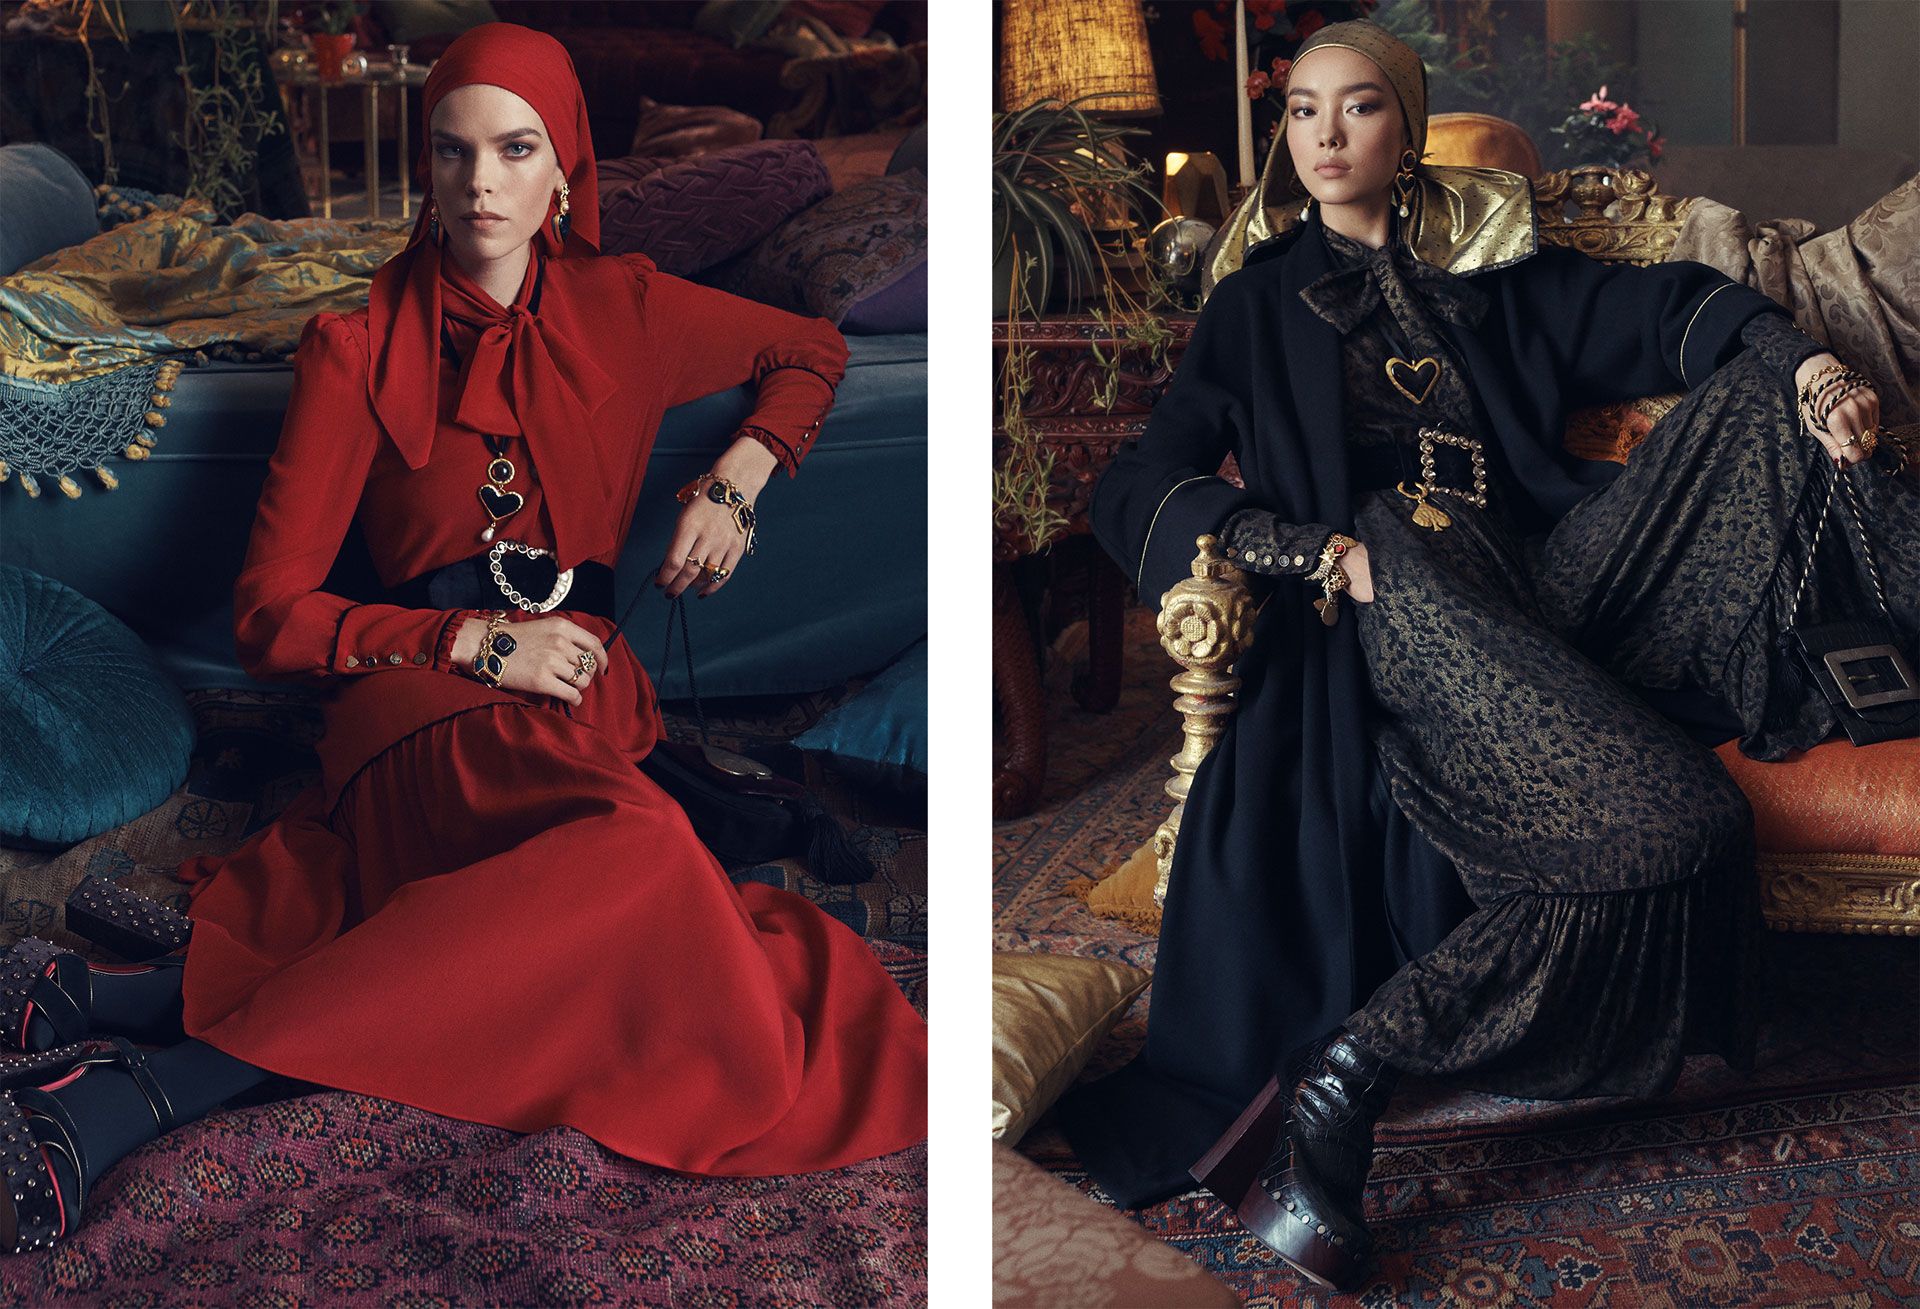 Zara nueva colección 2018 - Zara te va a con su nueva colección, entre corsarios y los años